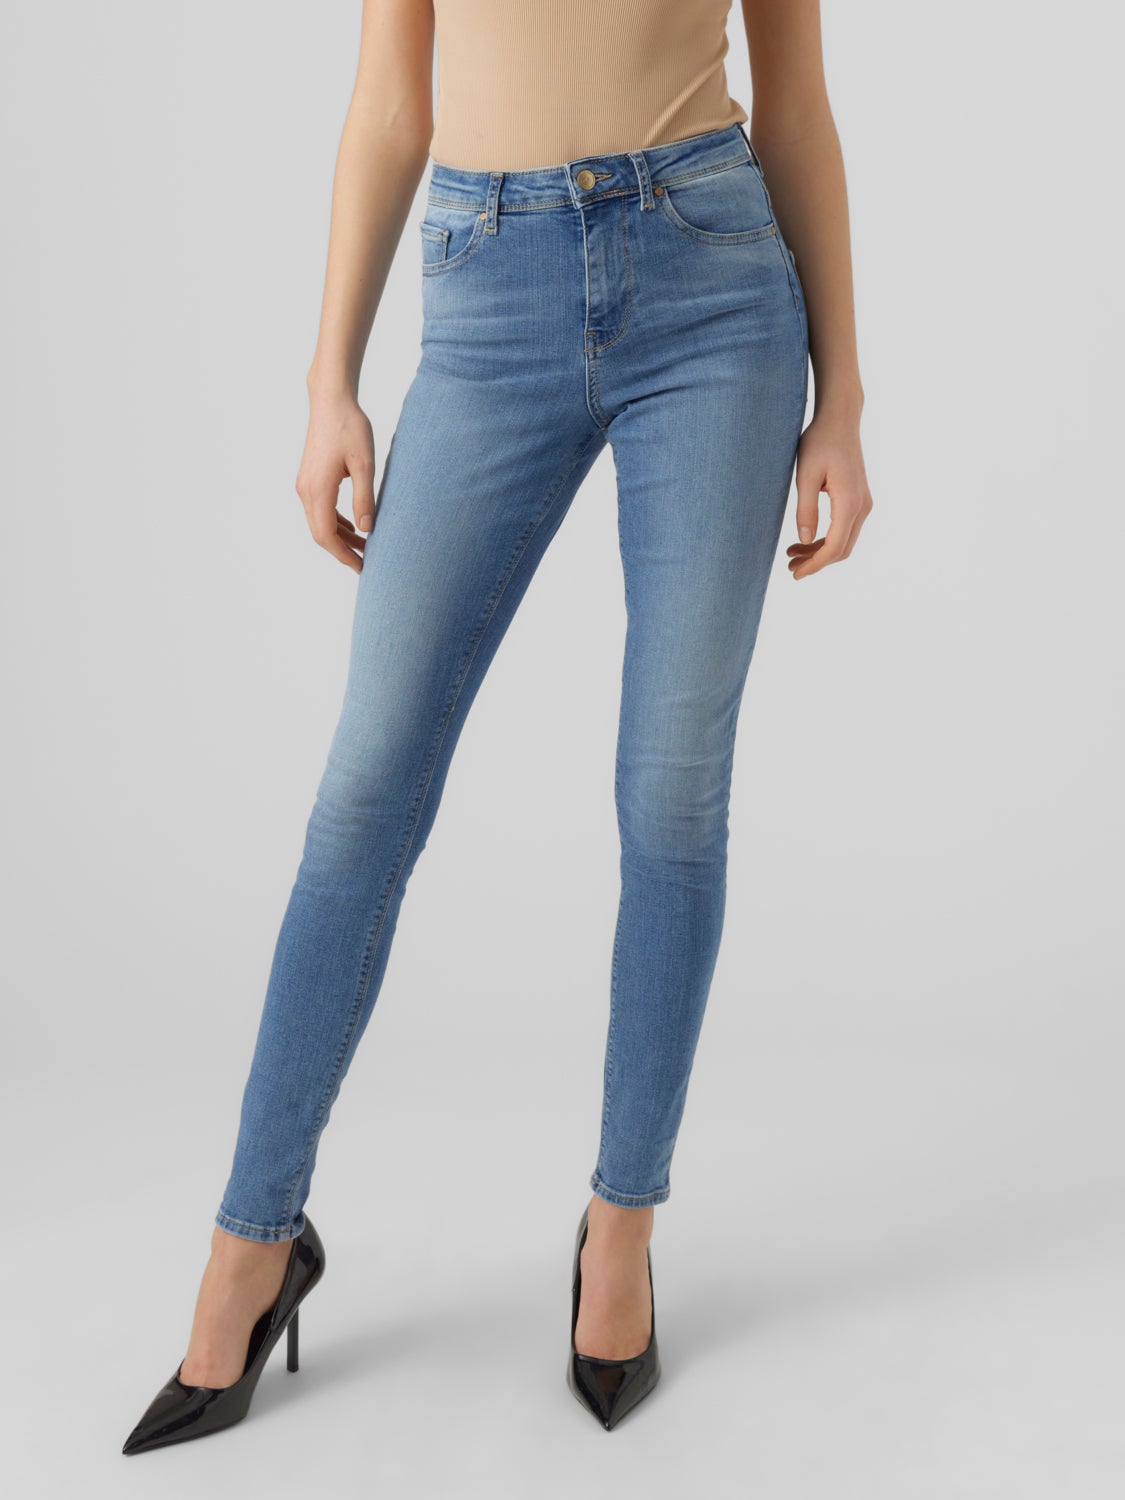 VMSOPHIA Jeans with 40% discount! | Vero Moda®